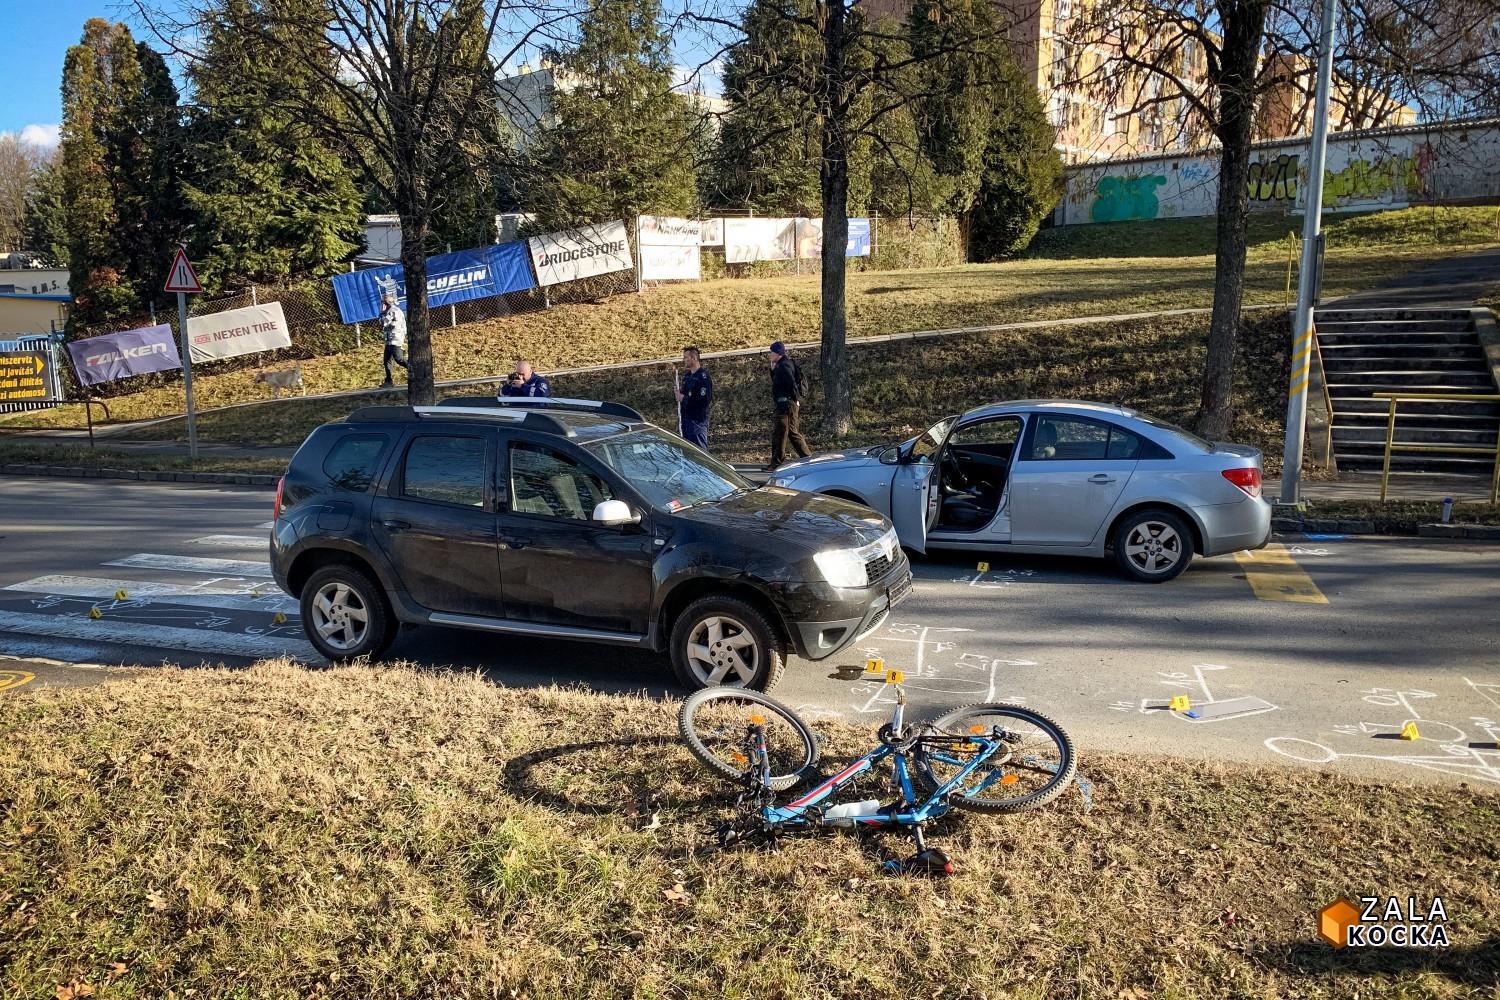 83 éves sofőr ütötte el a kerékpárját toló fiút